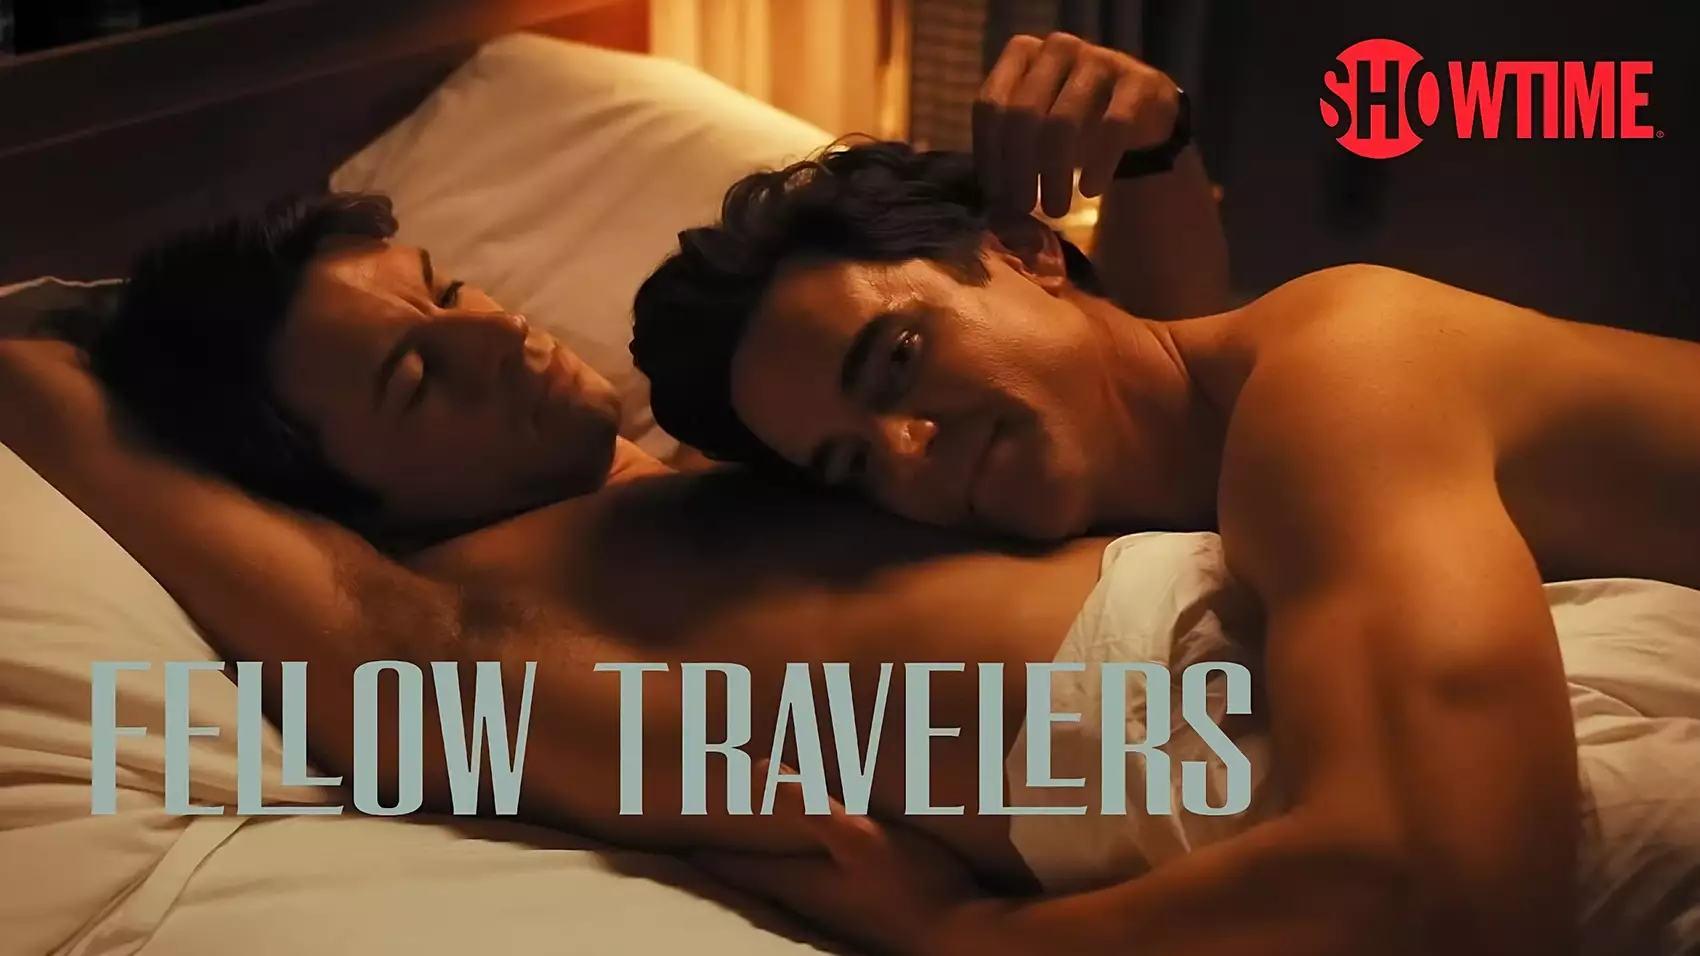 Secrets, sexe et survie : une histoire d'amour sous le microscope de McCarthy dans "Fellow Travelers" sur SHOWTIME